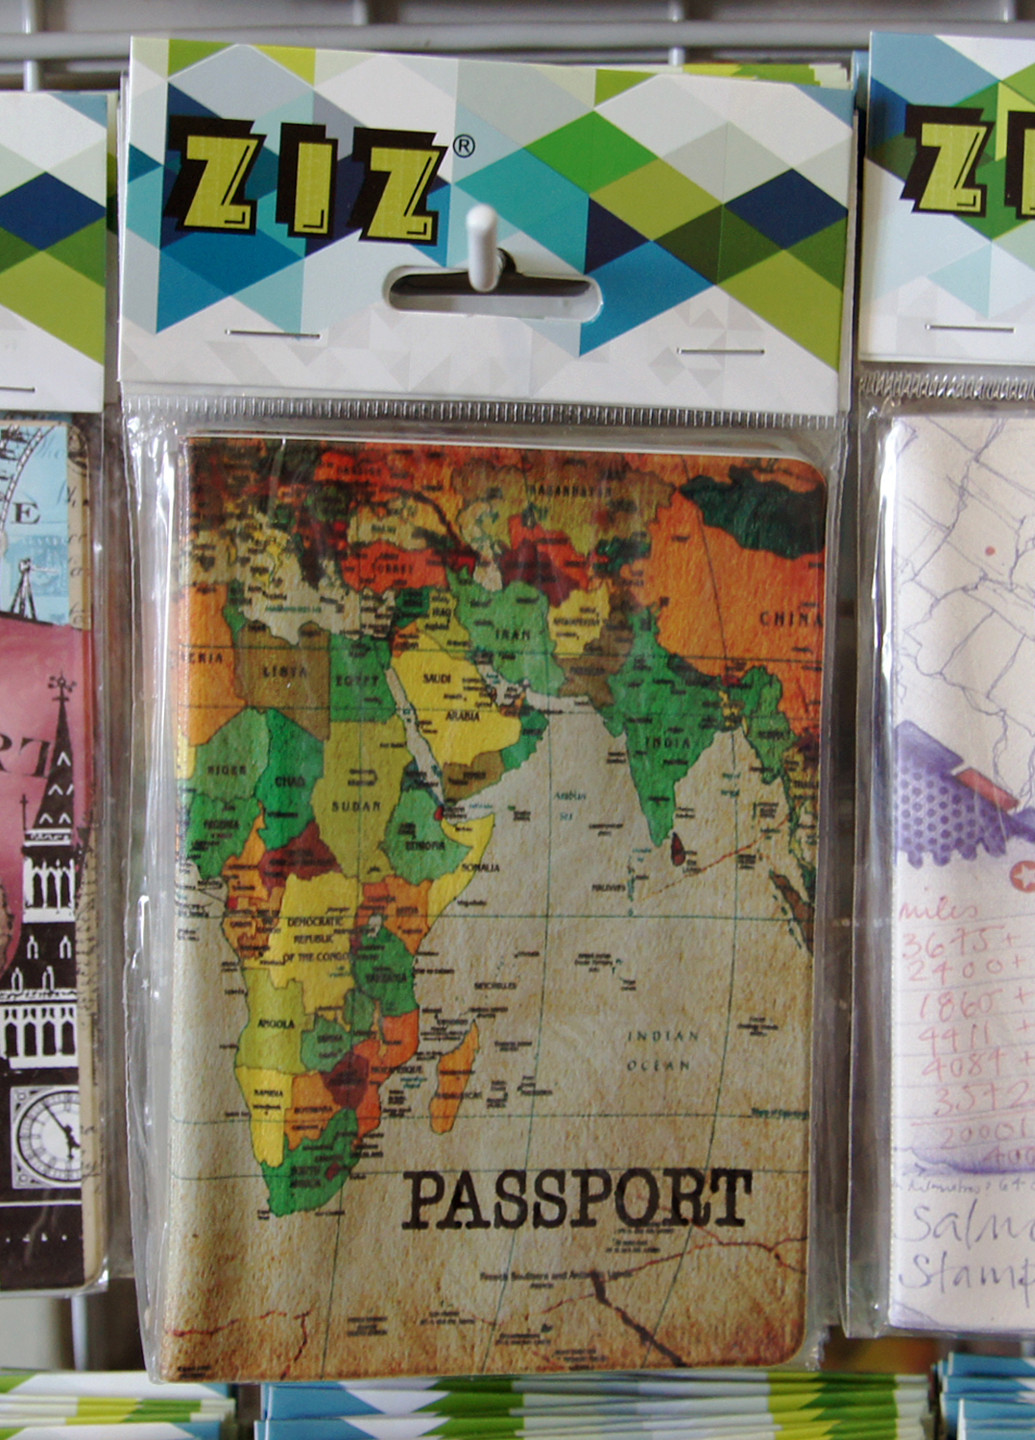 Обложка для паспорта, 9х13 см Ziz (16886653)